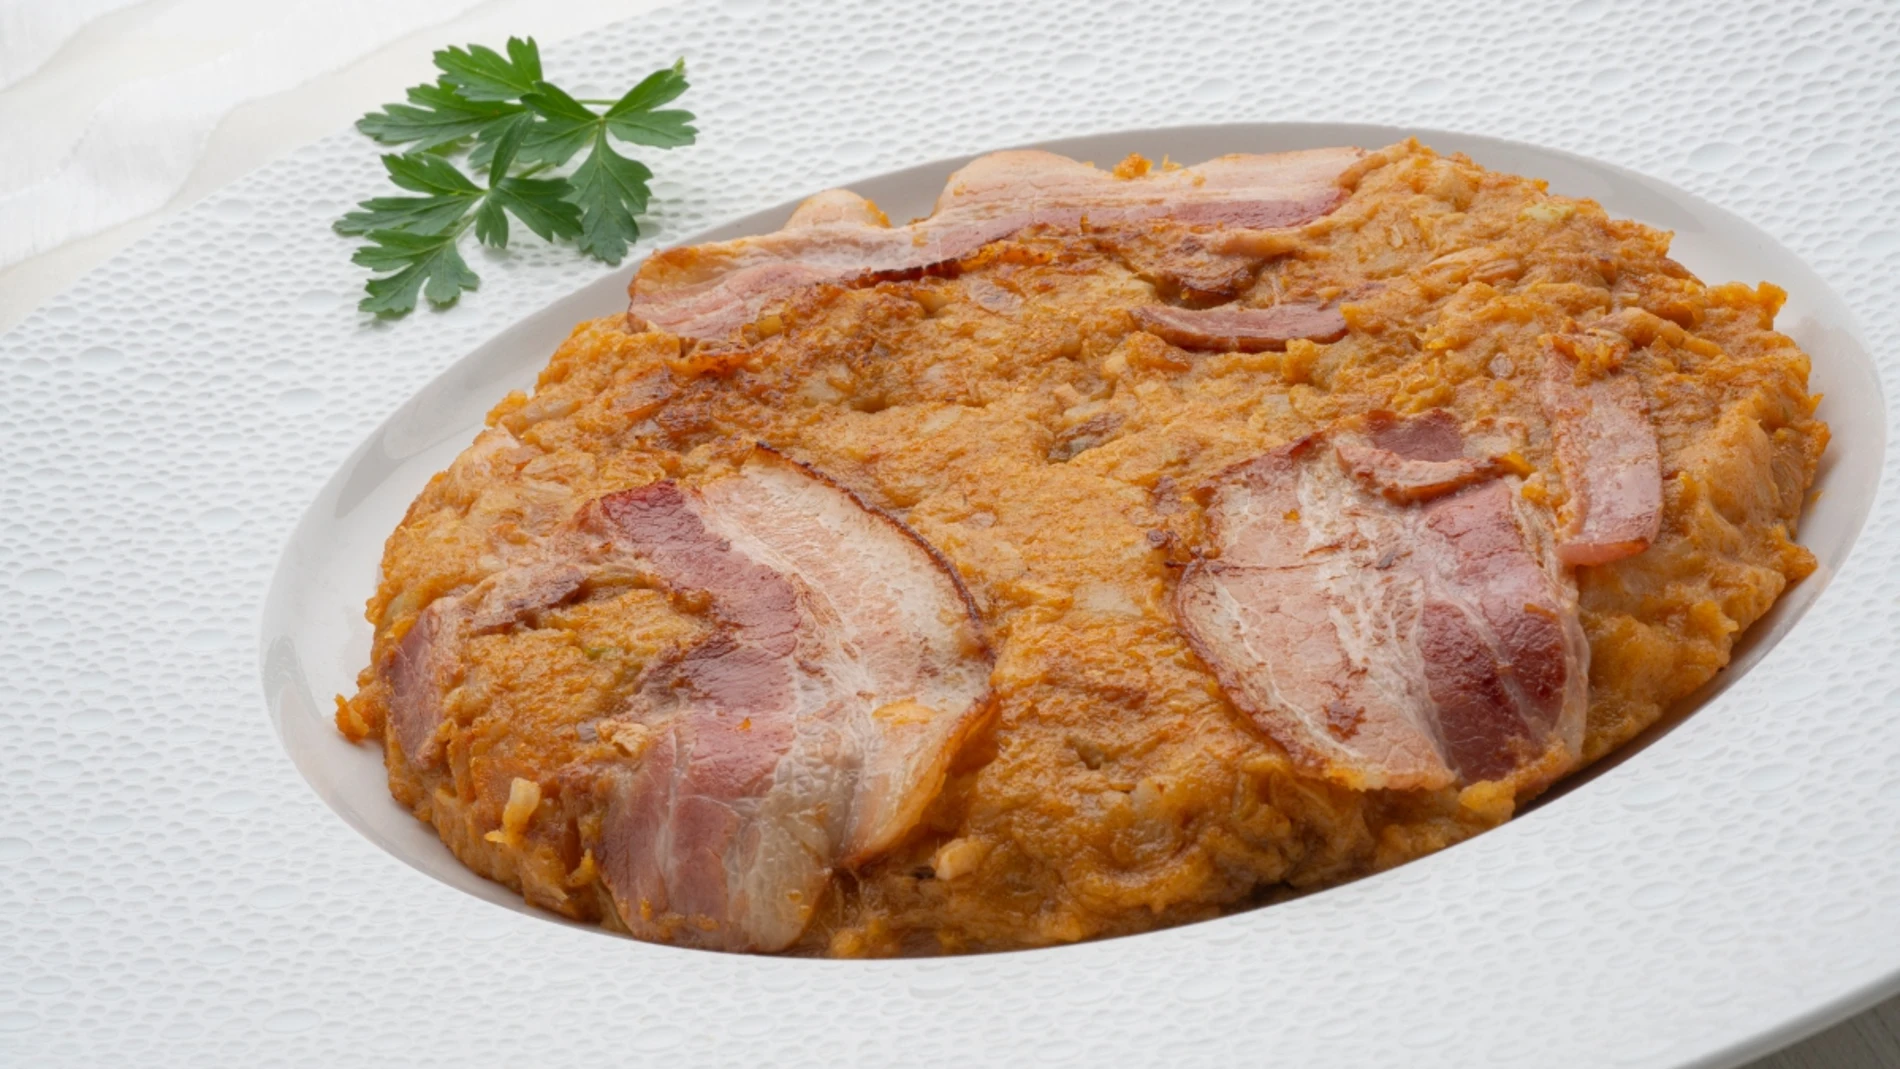 Trinxar con bacon, la receta sabrosa y completa de Karlos Arguiñano